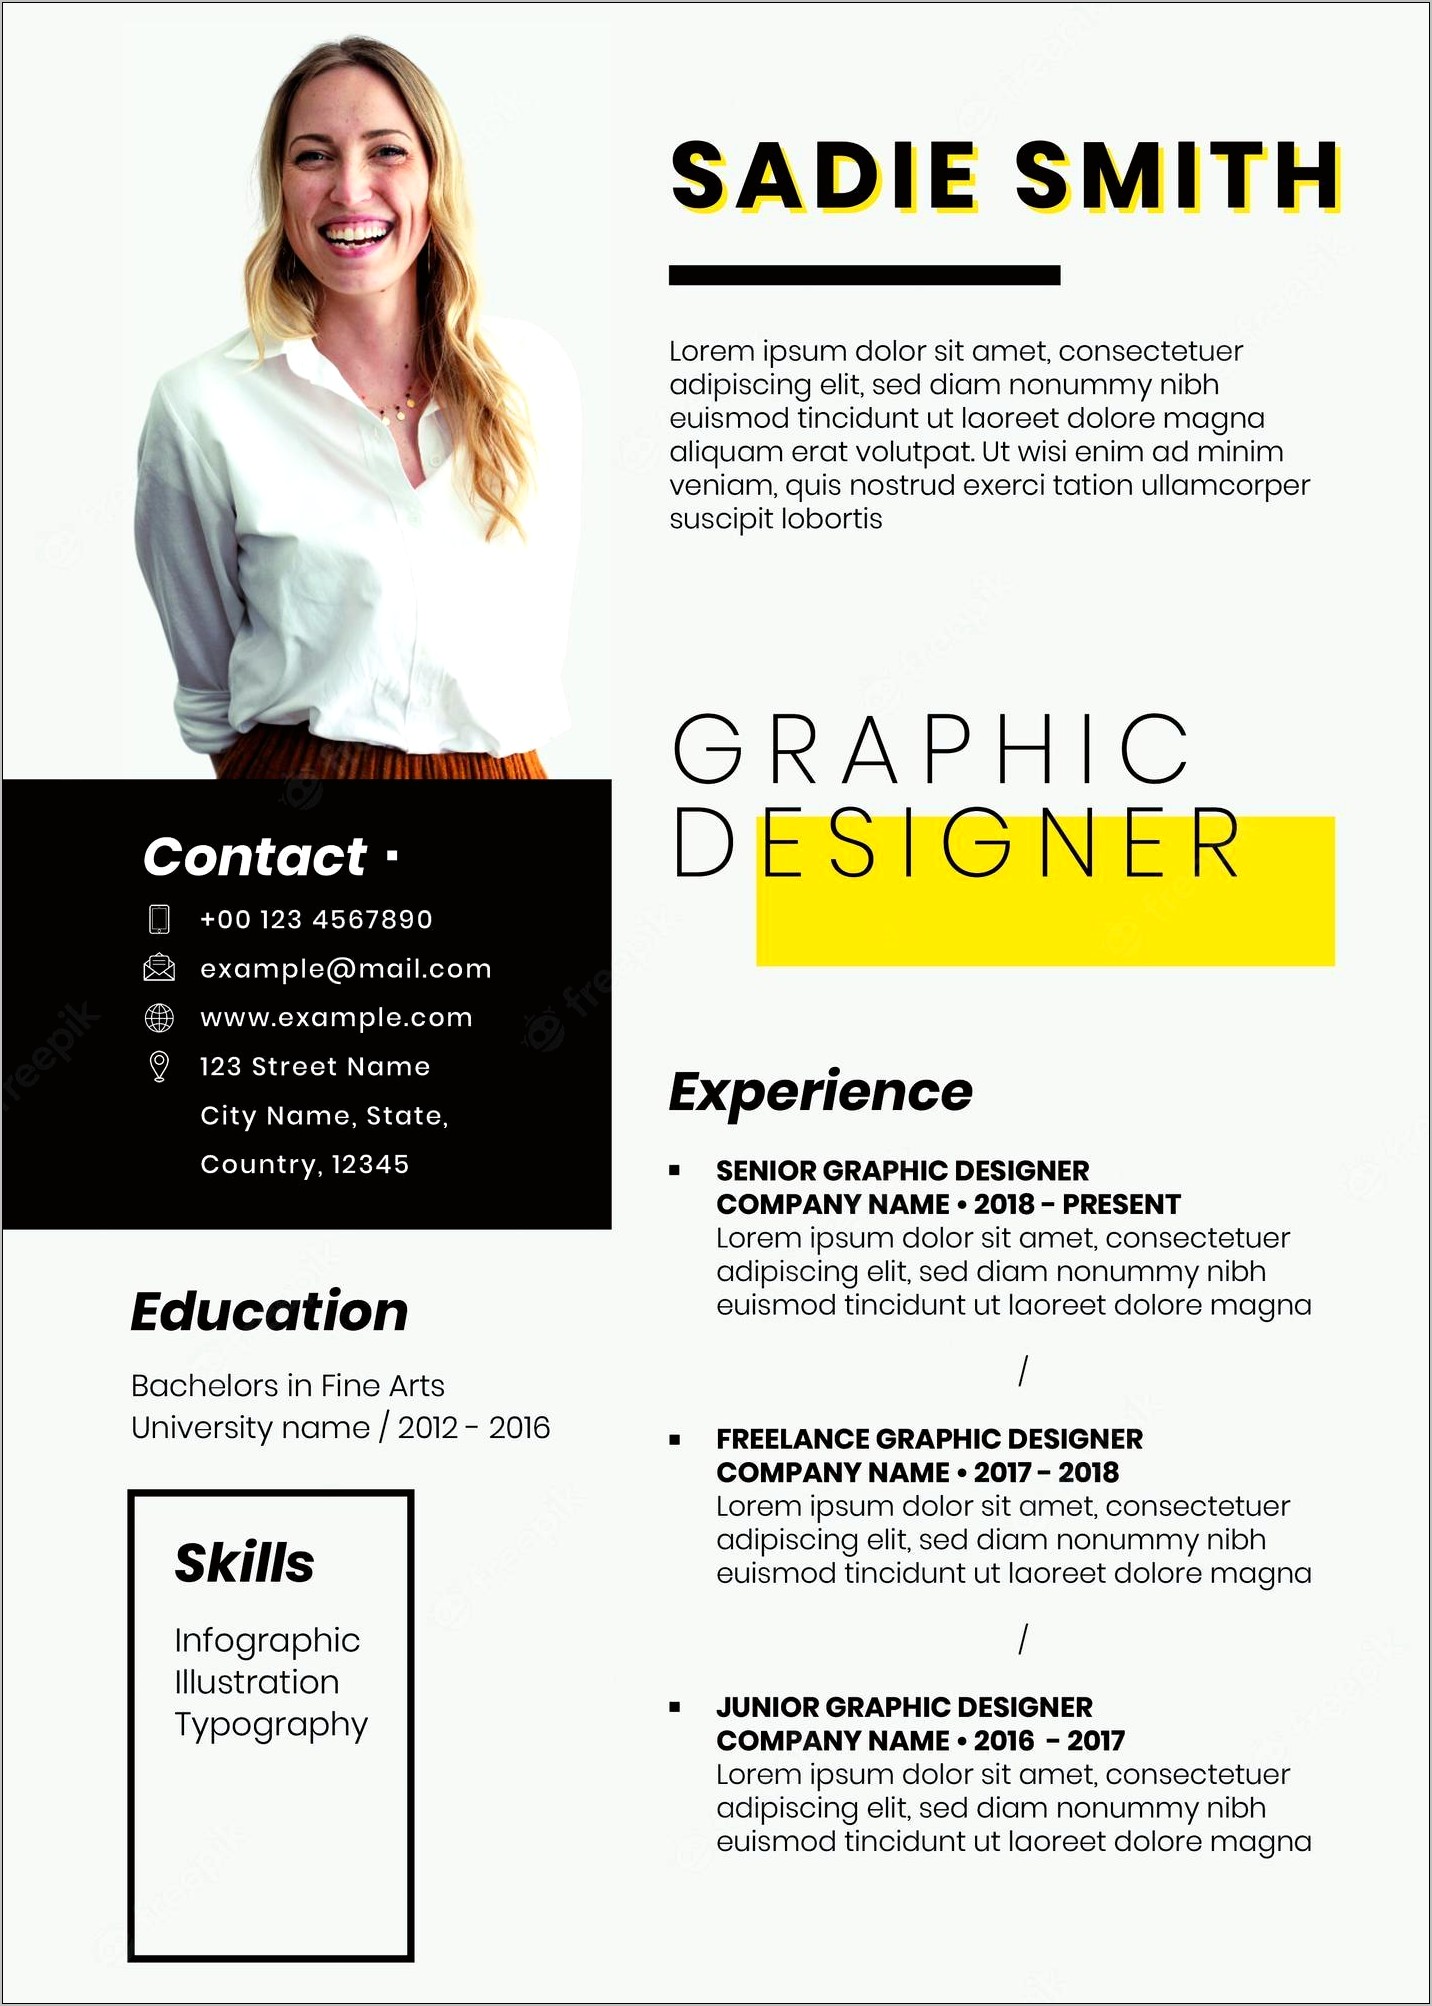 Graphic Designer Resume Sample 2017